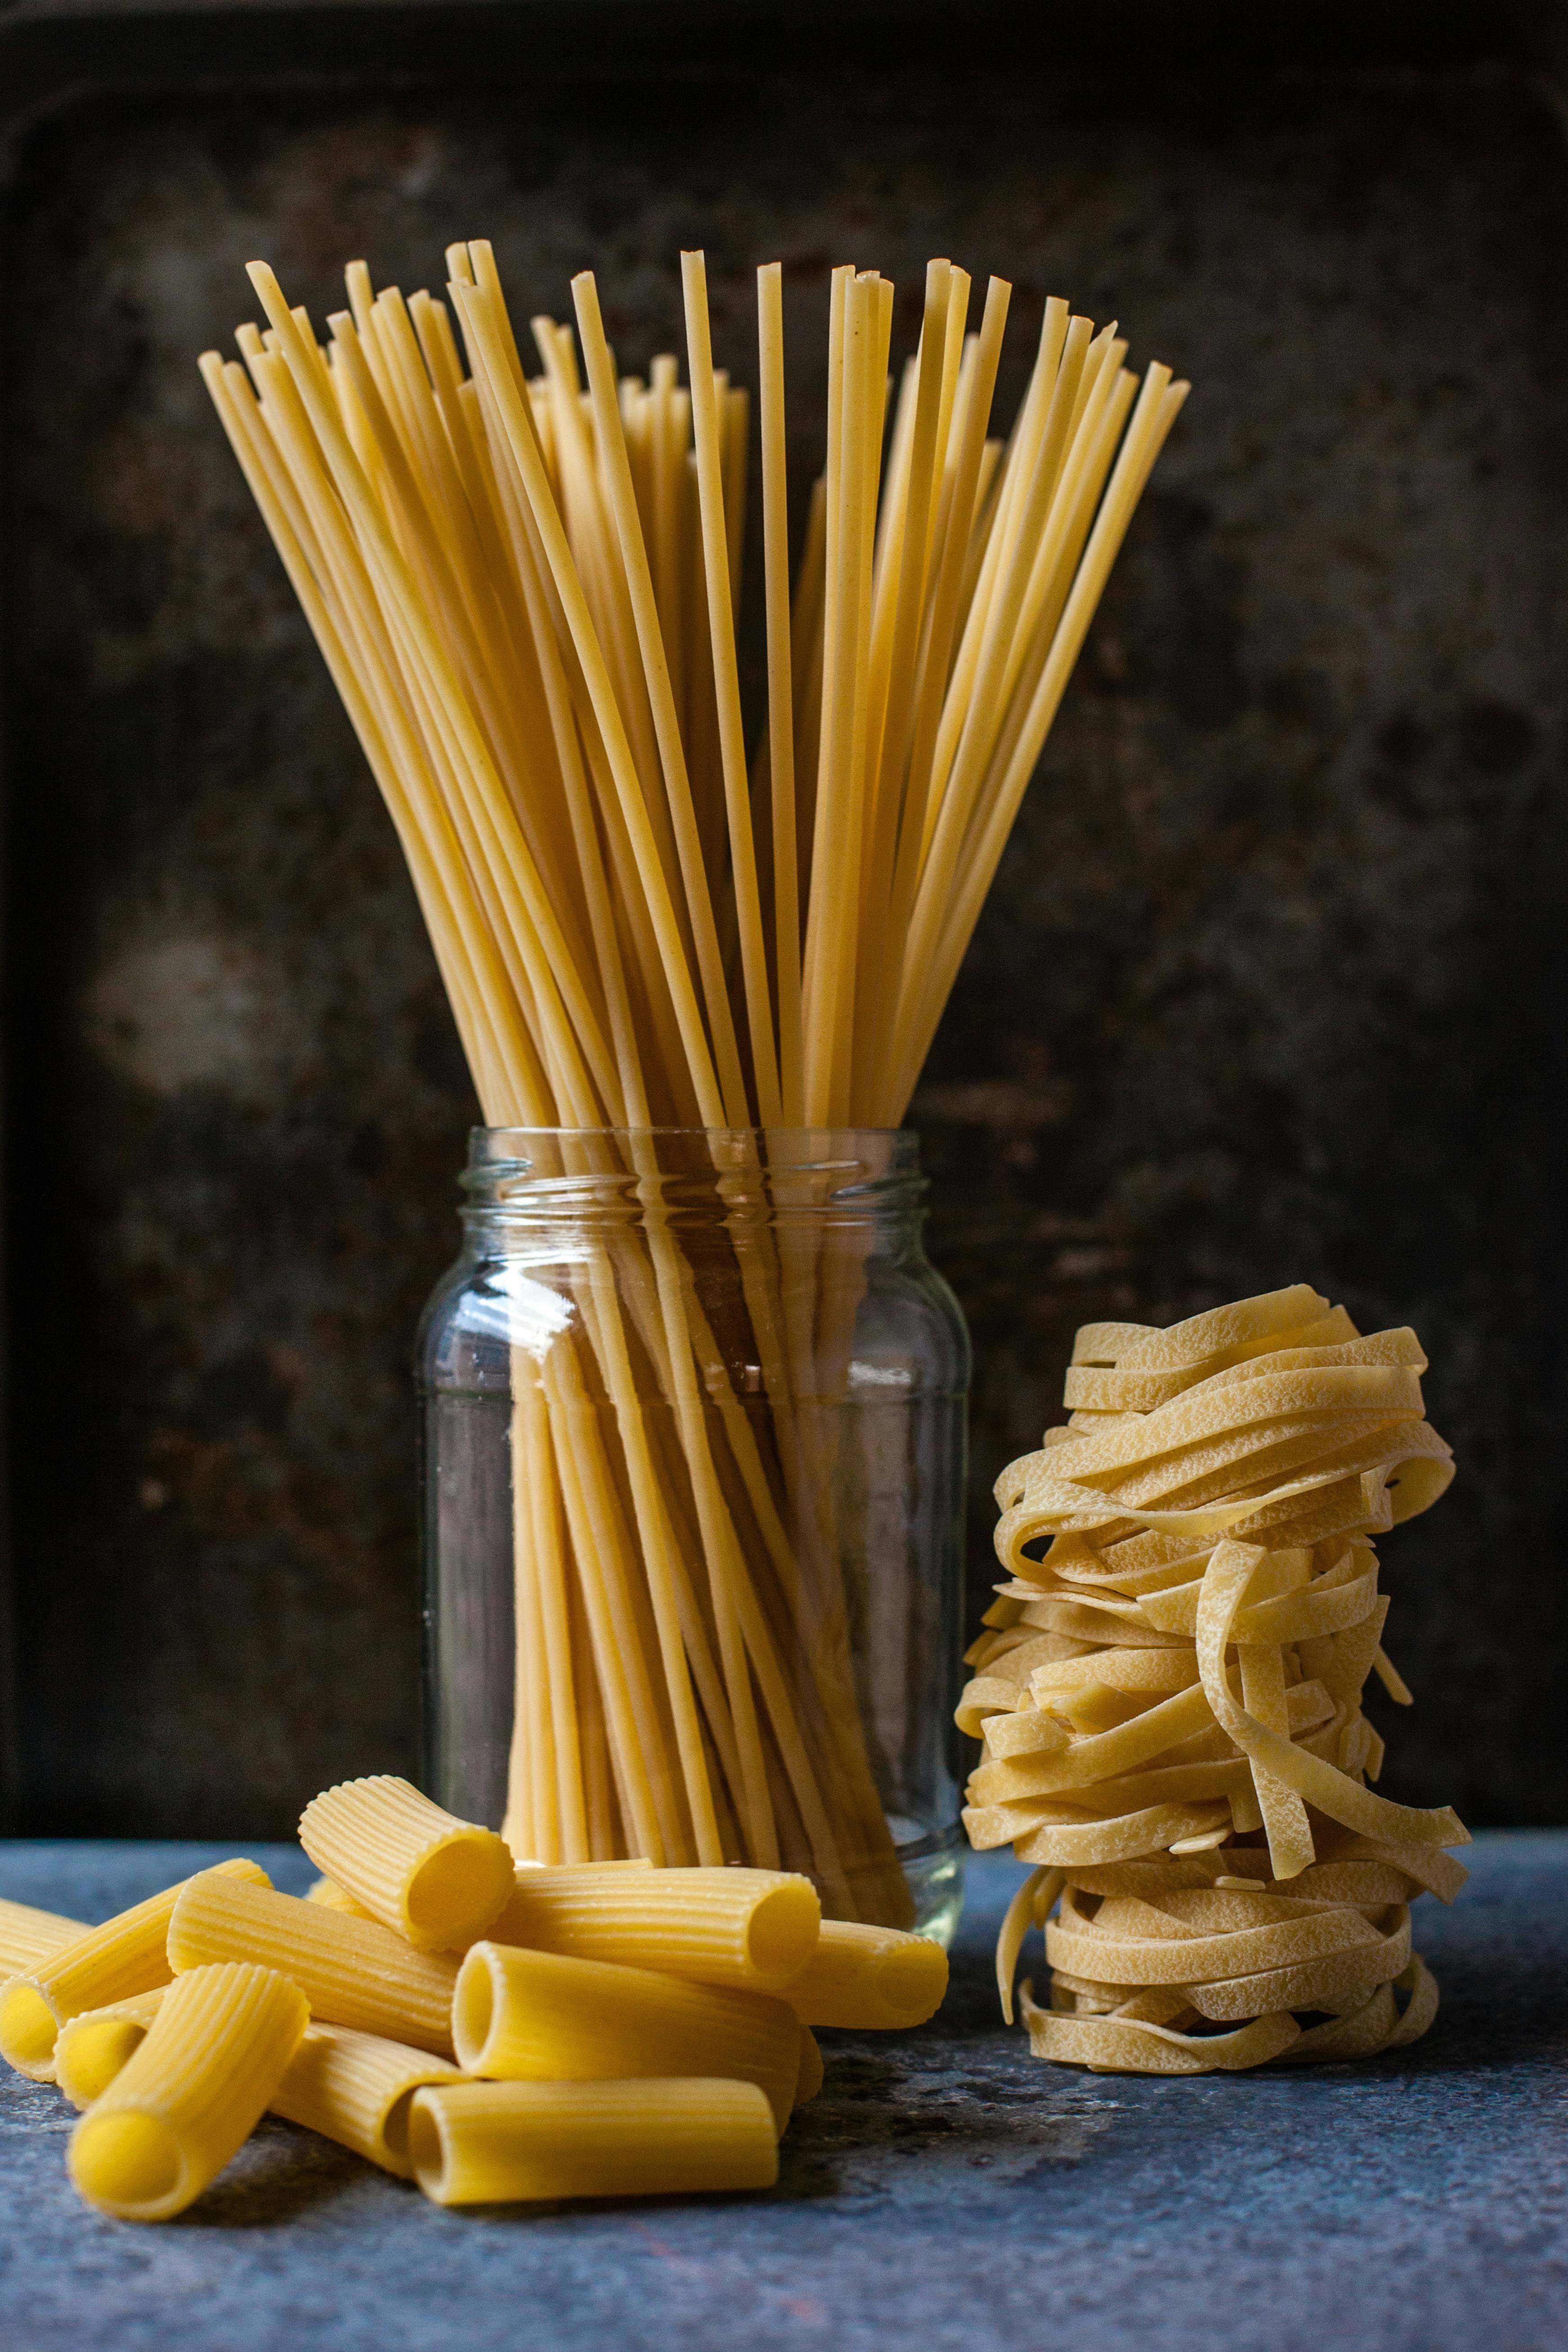 Authentic Italian Pasta Recipes